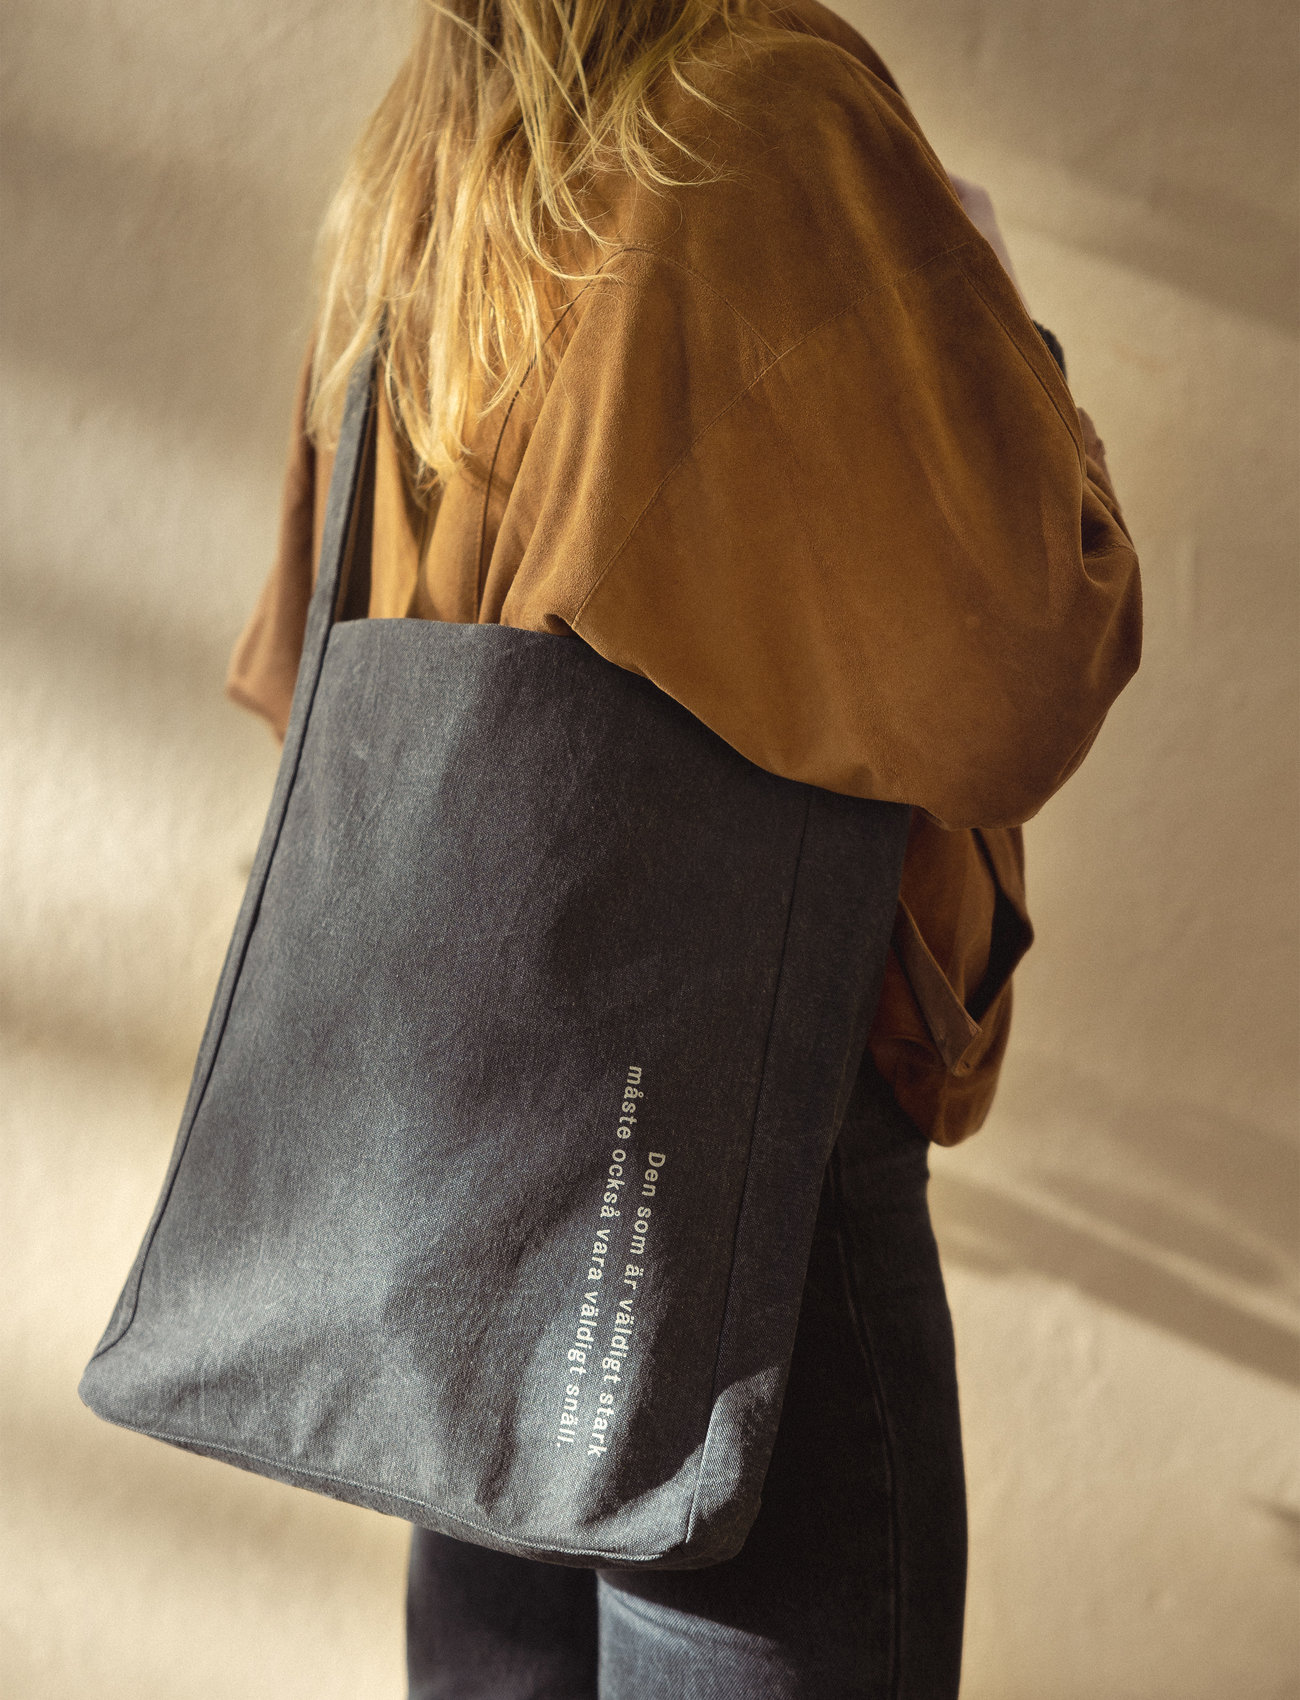 Design House Stockholm - Astrid Lindgren Tote bag - tote bags - black - 1